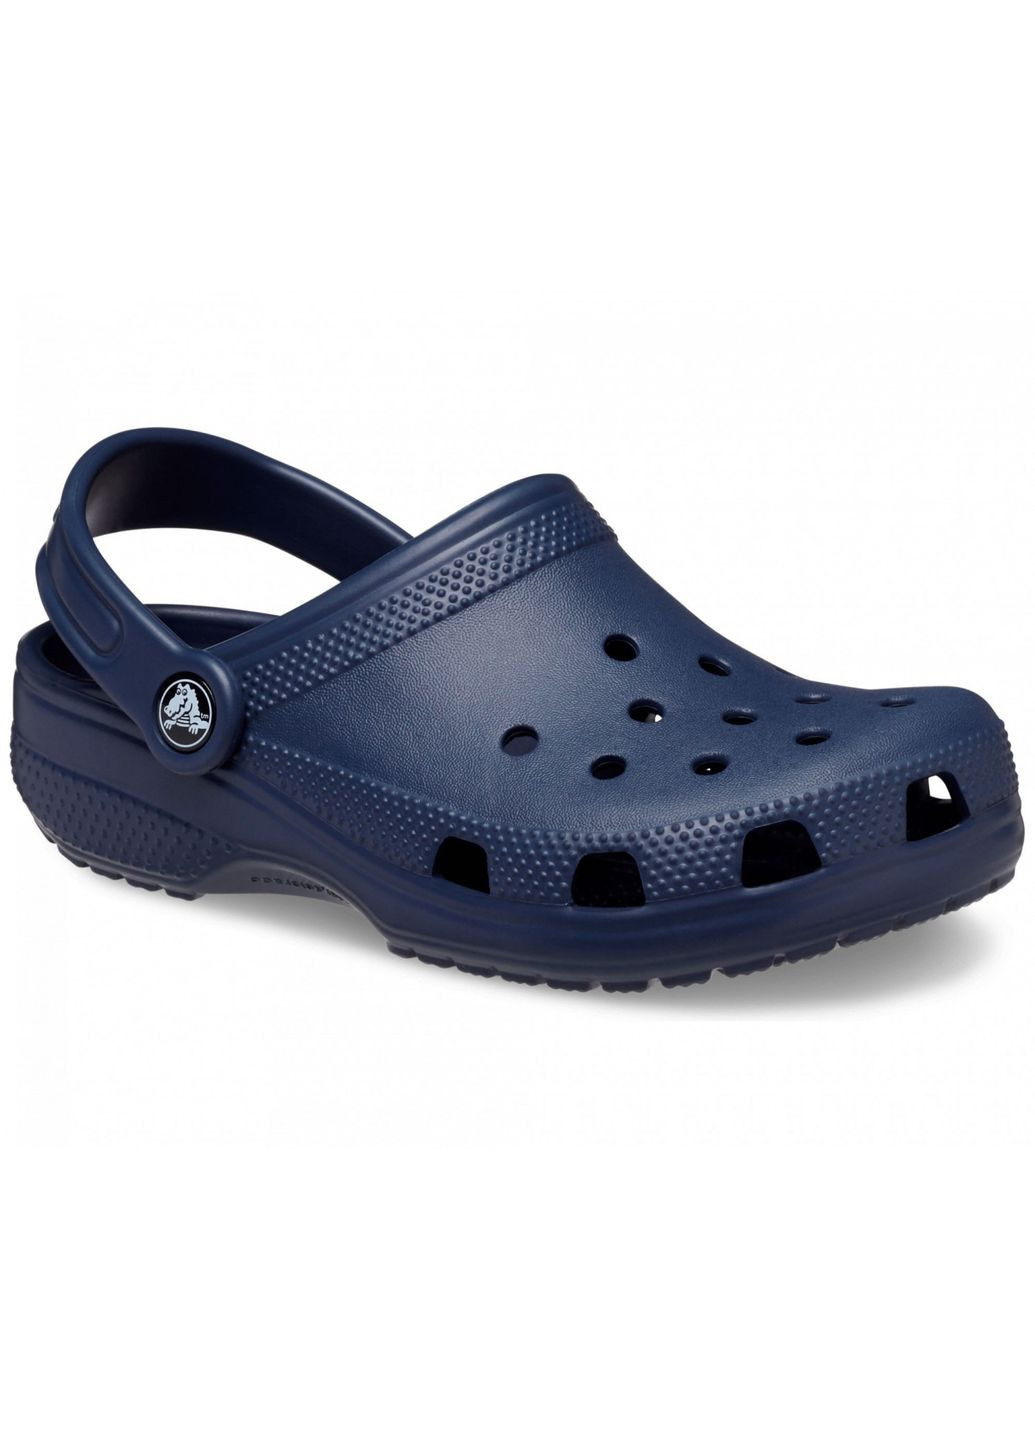 Синие сабо kids classic clog navy c11\28\18 см 206991 Crocs